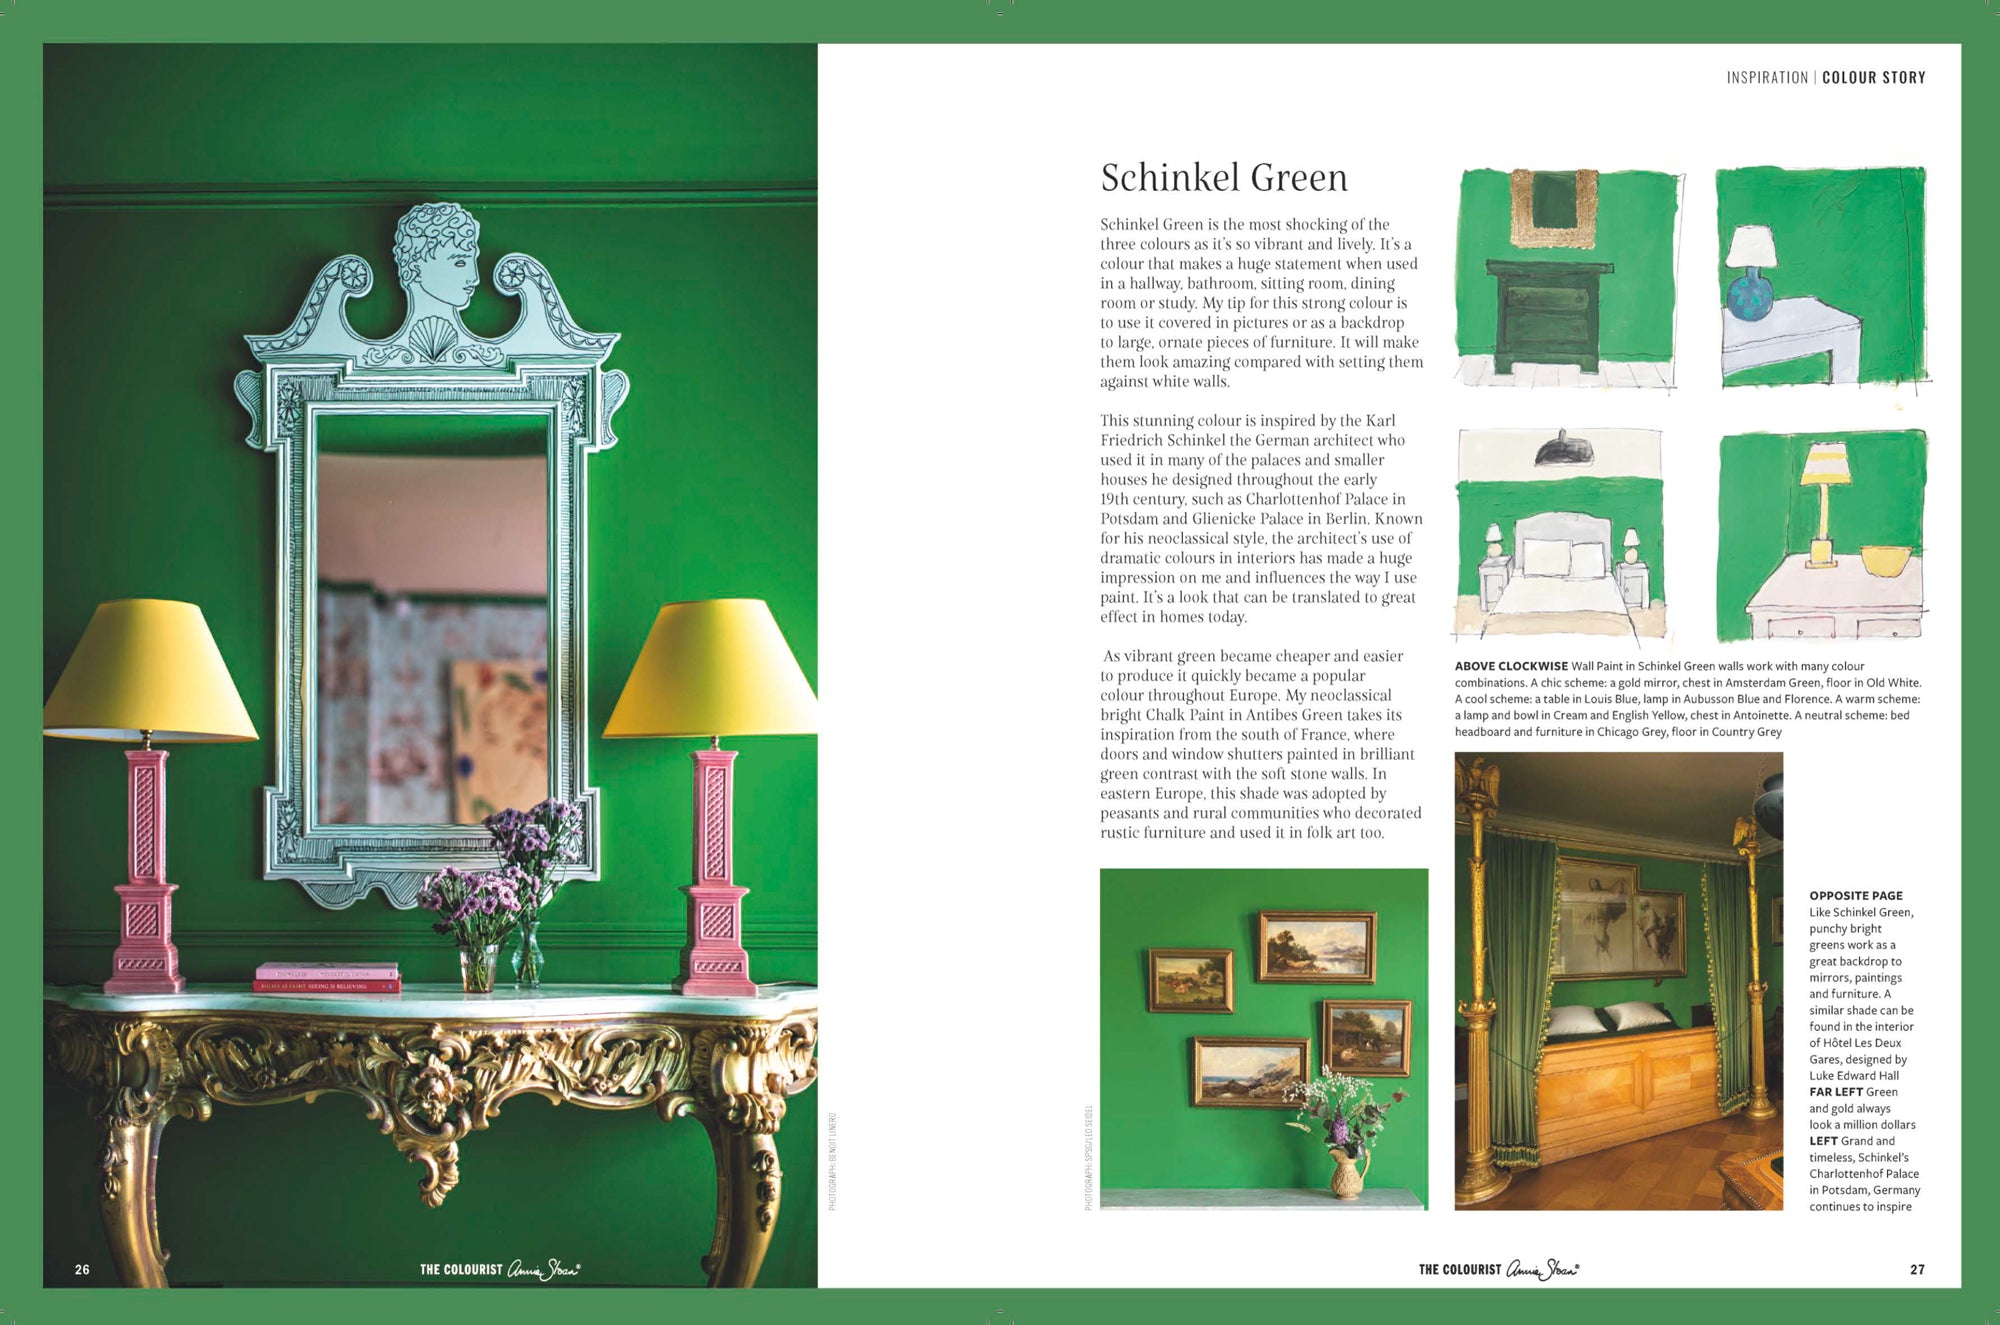  Temat är "Going Green" och innehåller stjärnsvängar från Annies nya Annie Sloan Wall Paint-färger Knightsbridge Green, Schinkel Green och Chalk Paint™ i Firle i magasinet The Colourist från Annie Sloan.